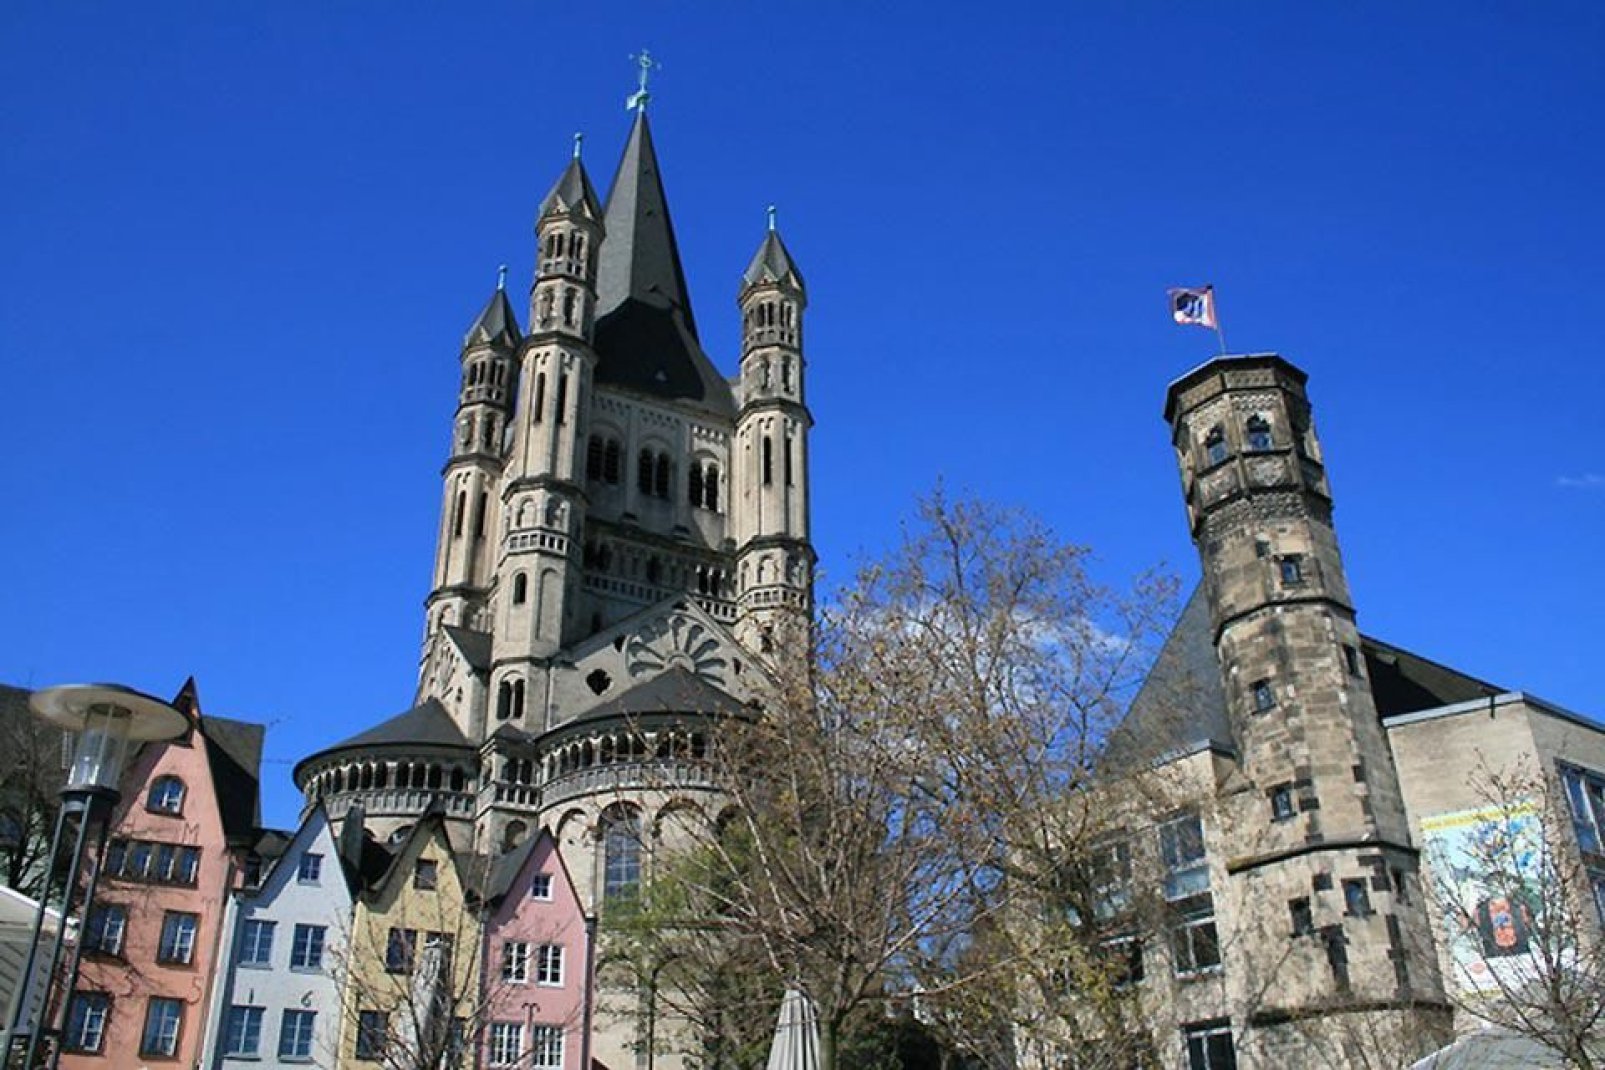 La città vecchia di Colonia vanta numerose piazze con abitazioni colorate.